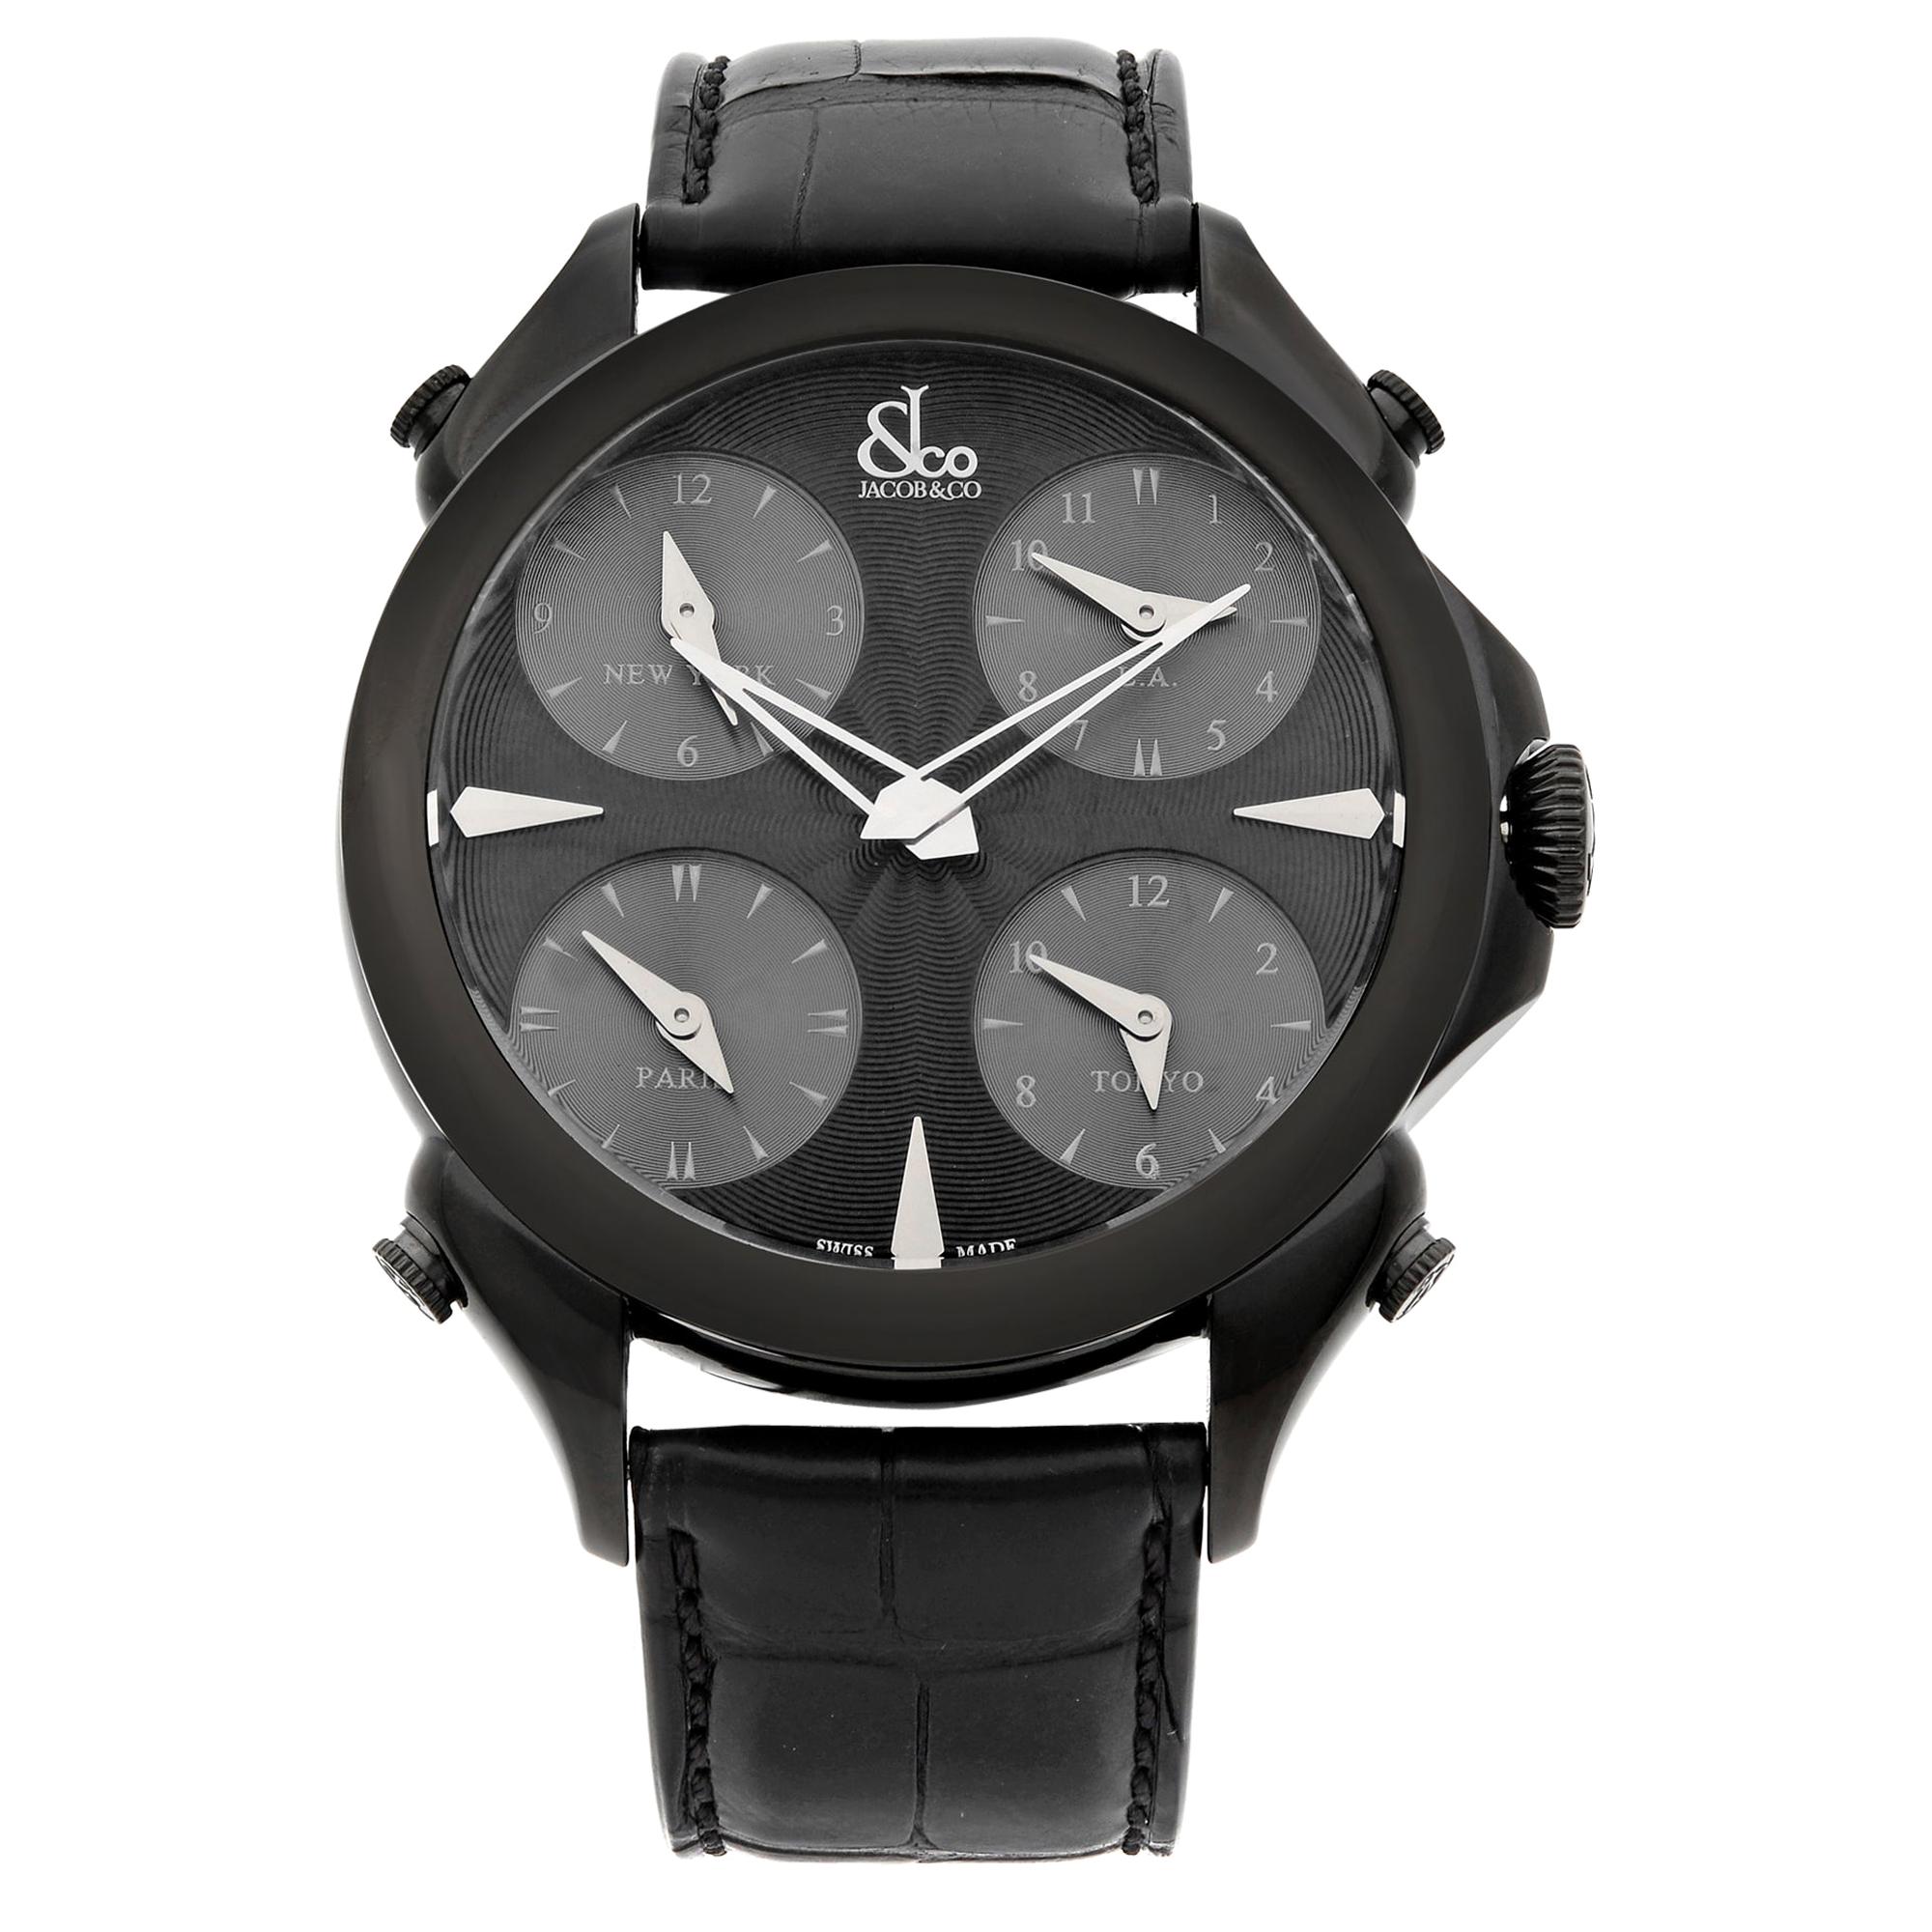 Jacob & Co. Palatial 5 Time Zone Steel Black Dial Men's Watch PZ500.11.NS.LA.A